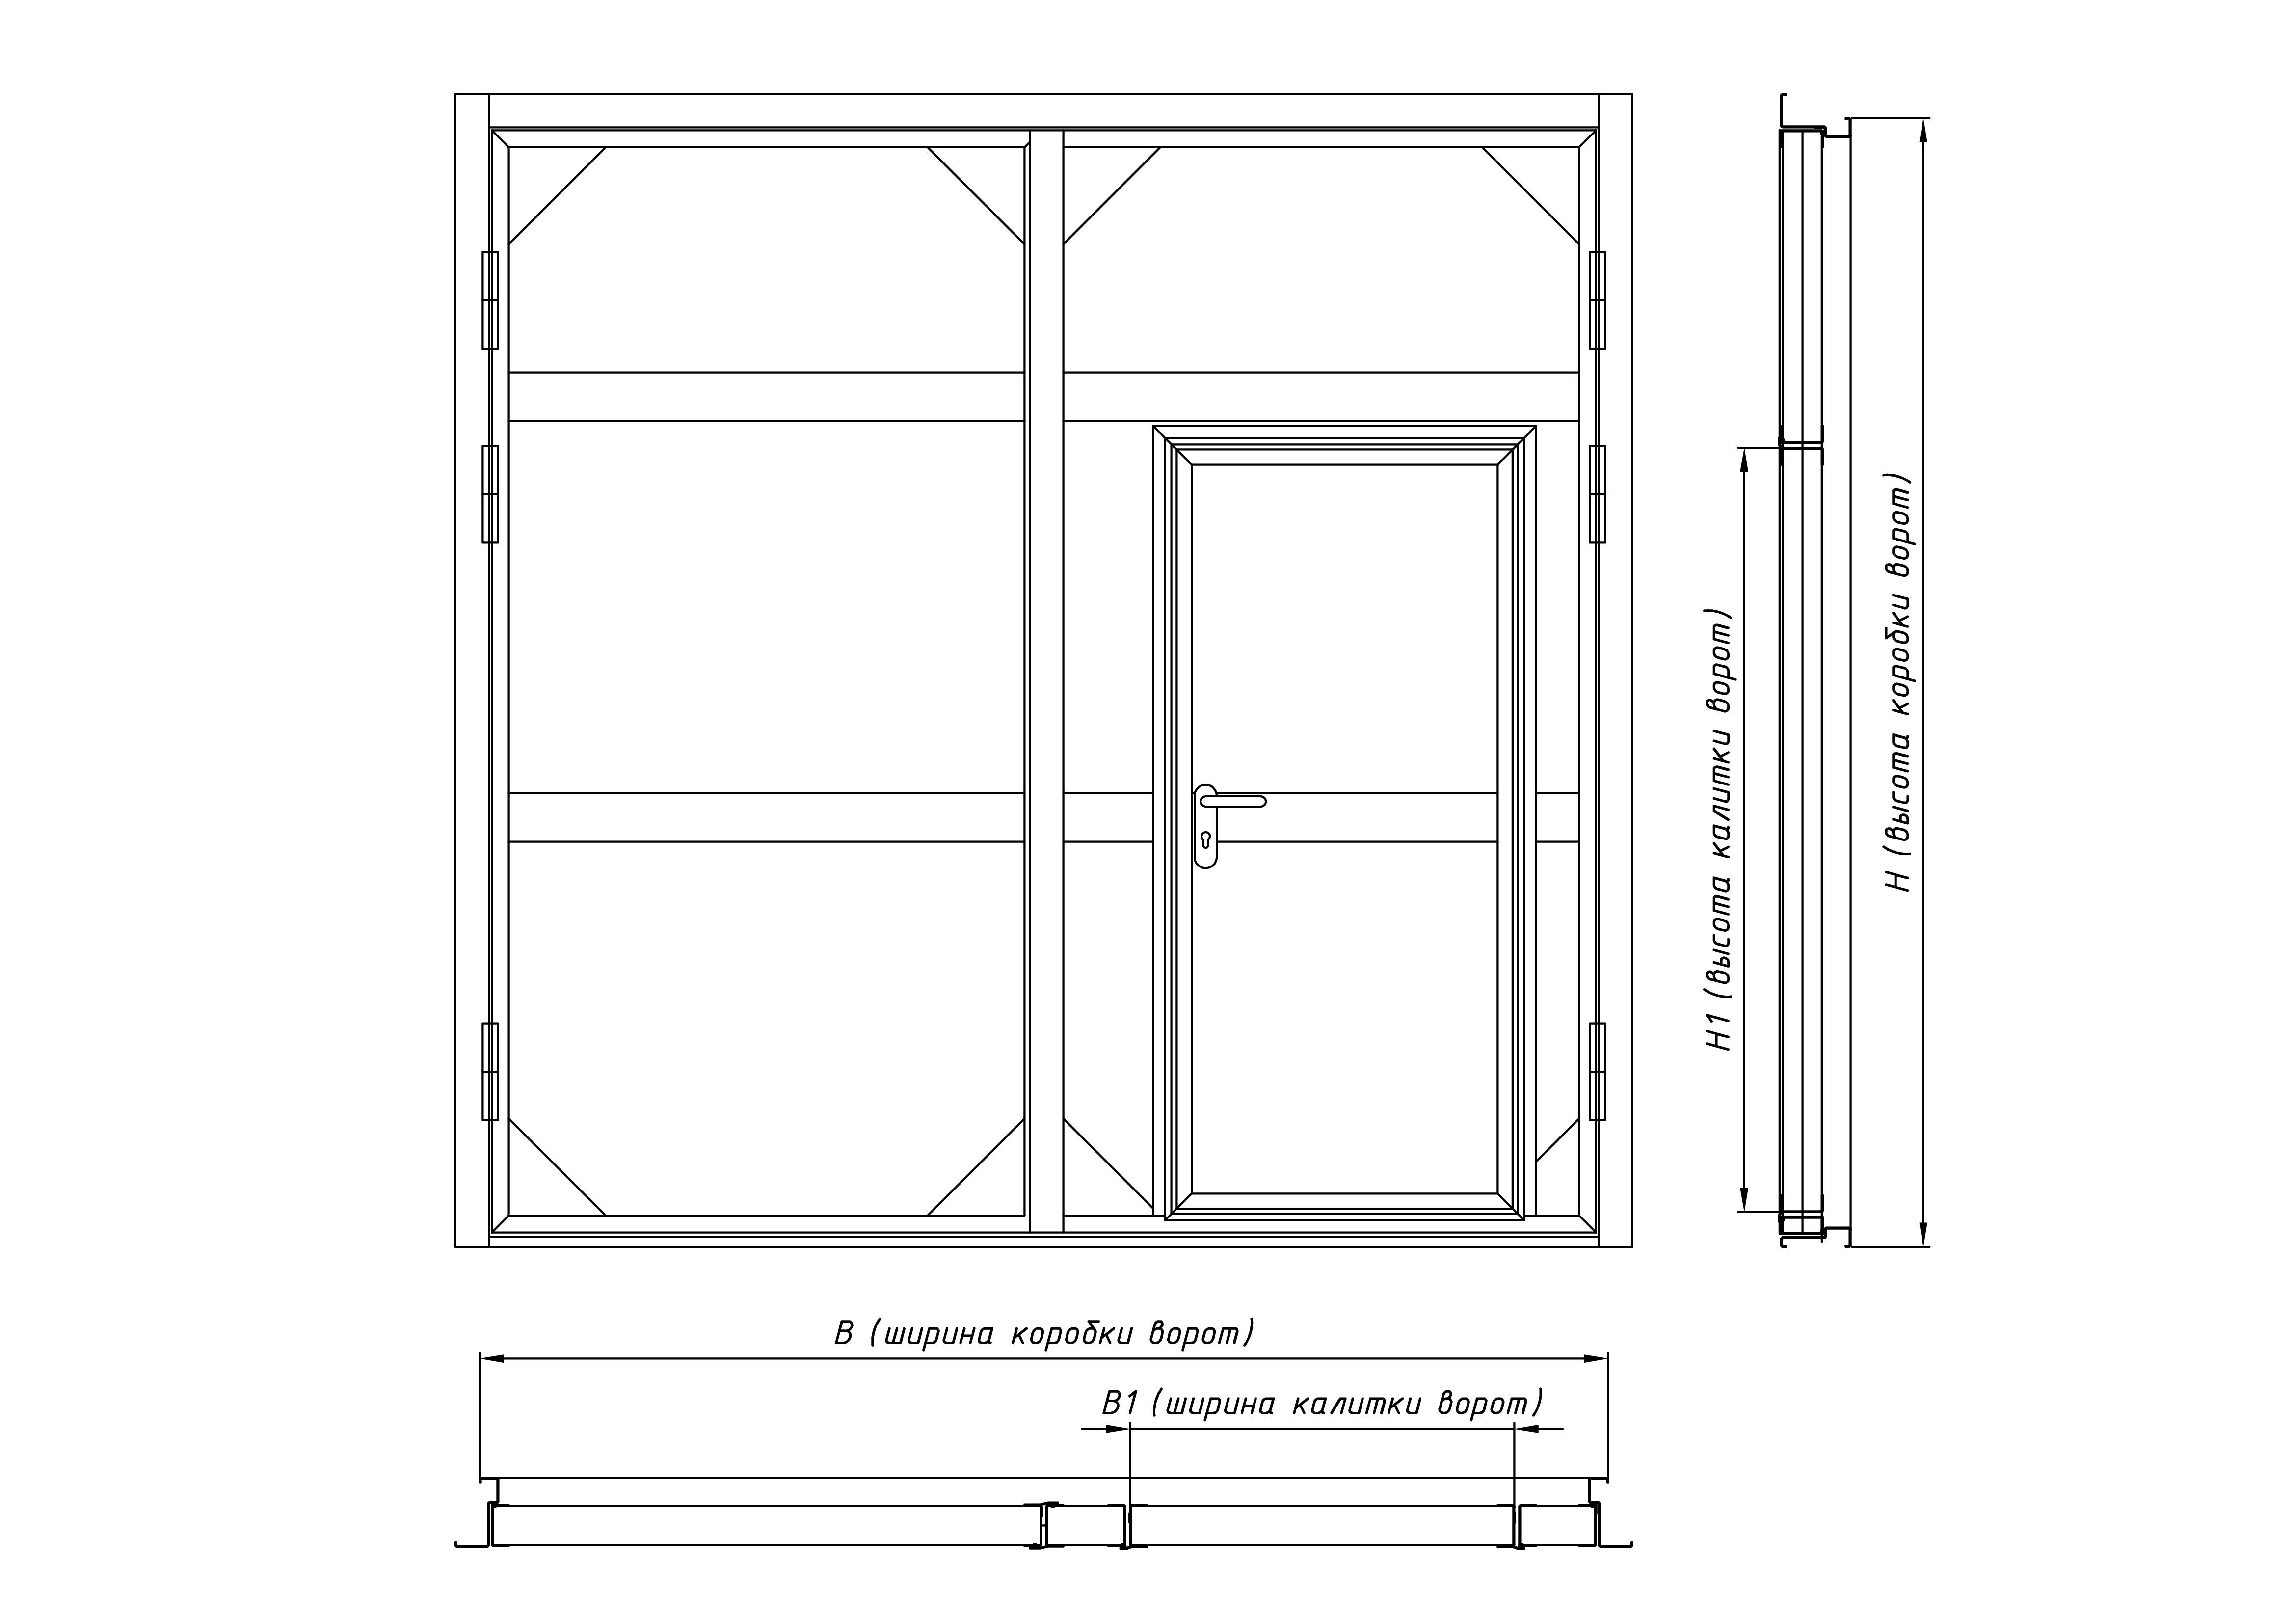 Гаражные ворота (85 фото): стандартные размеры универсальных металлических ворот для гаража, модели с пультом управления